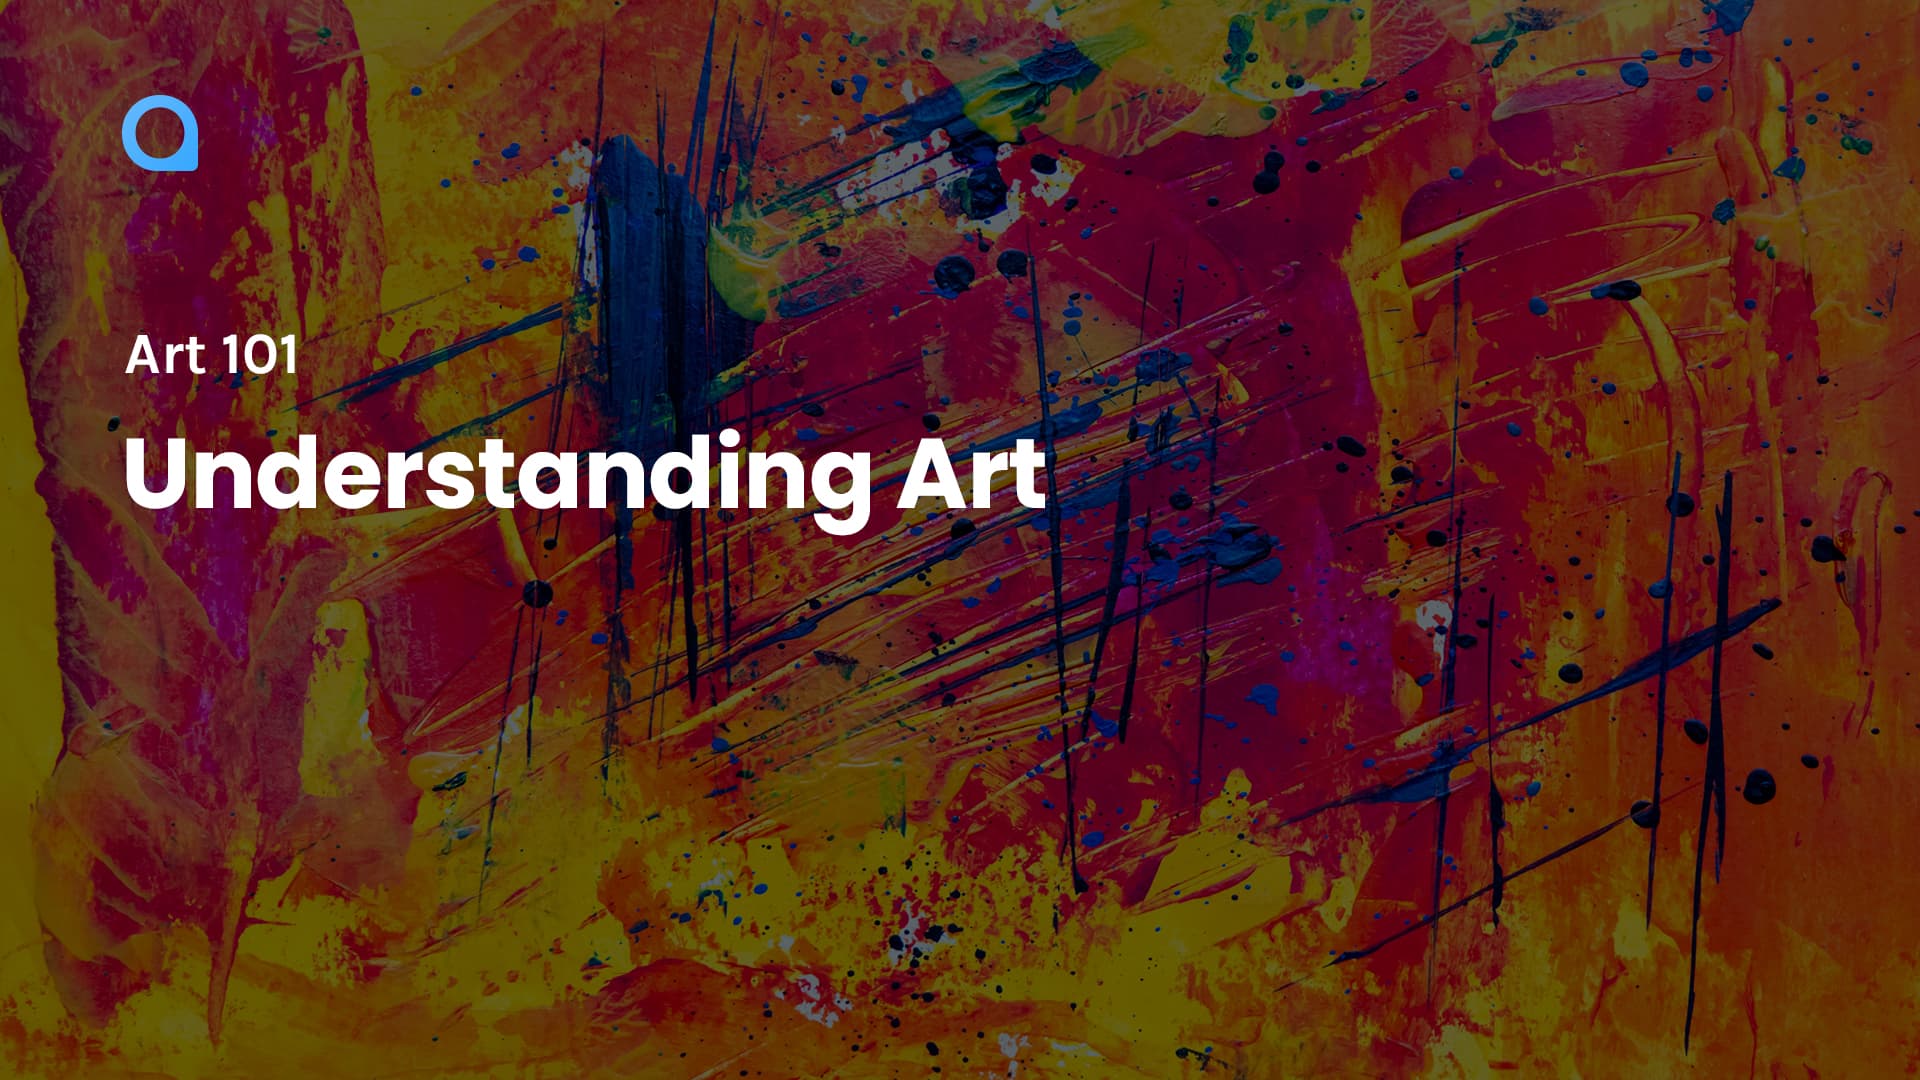 Art 101: Understanding Art